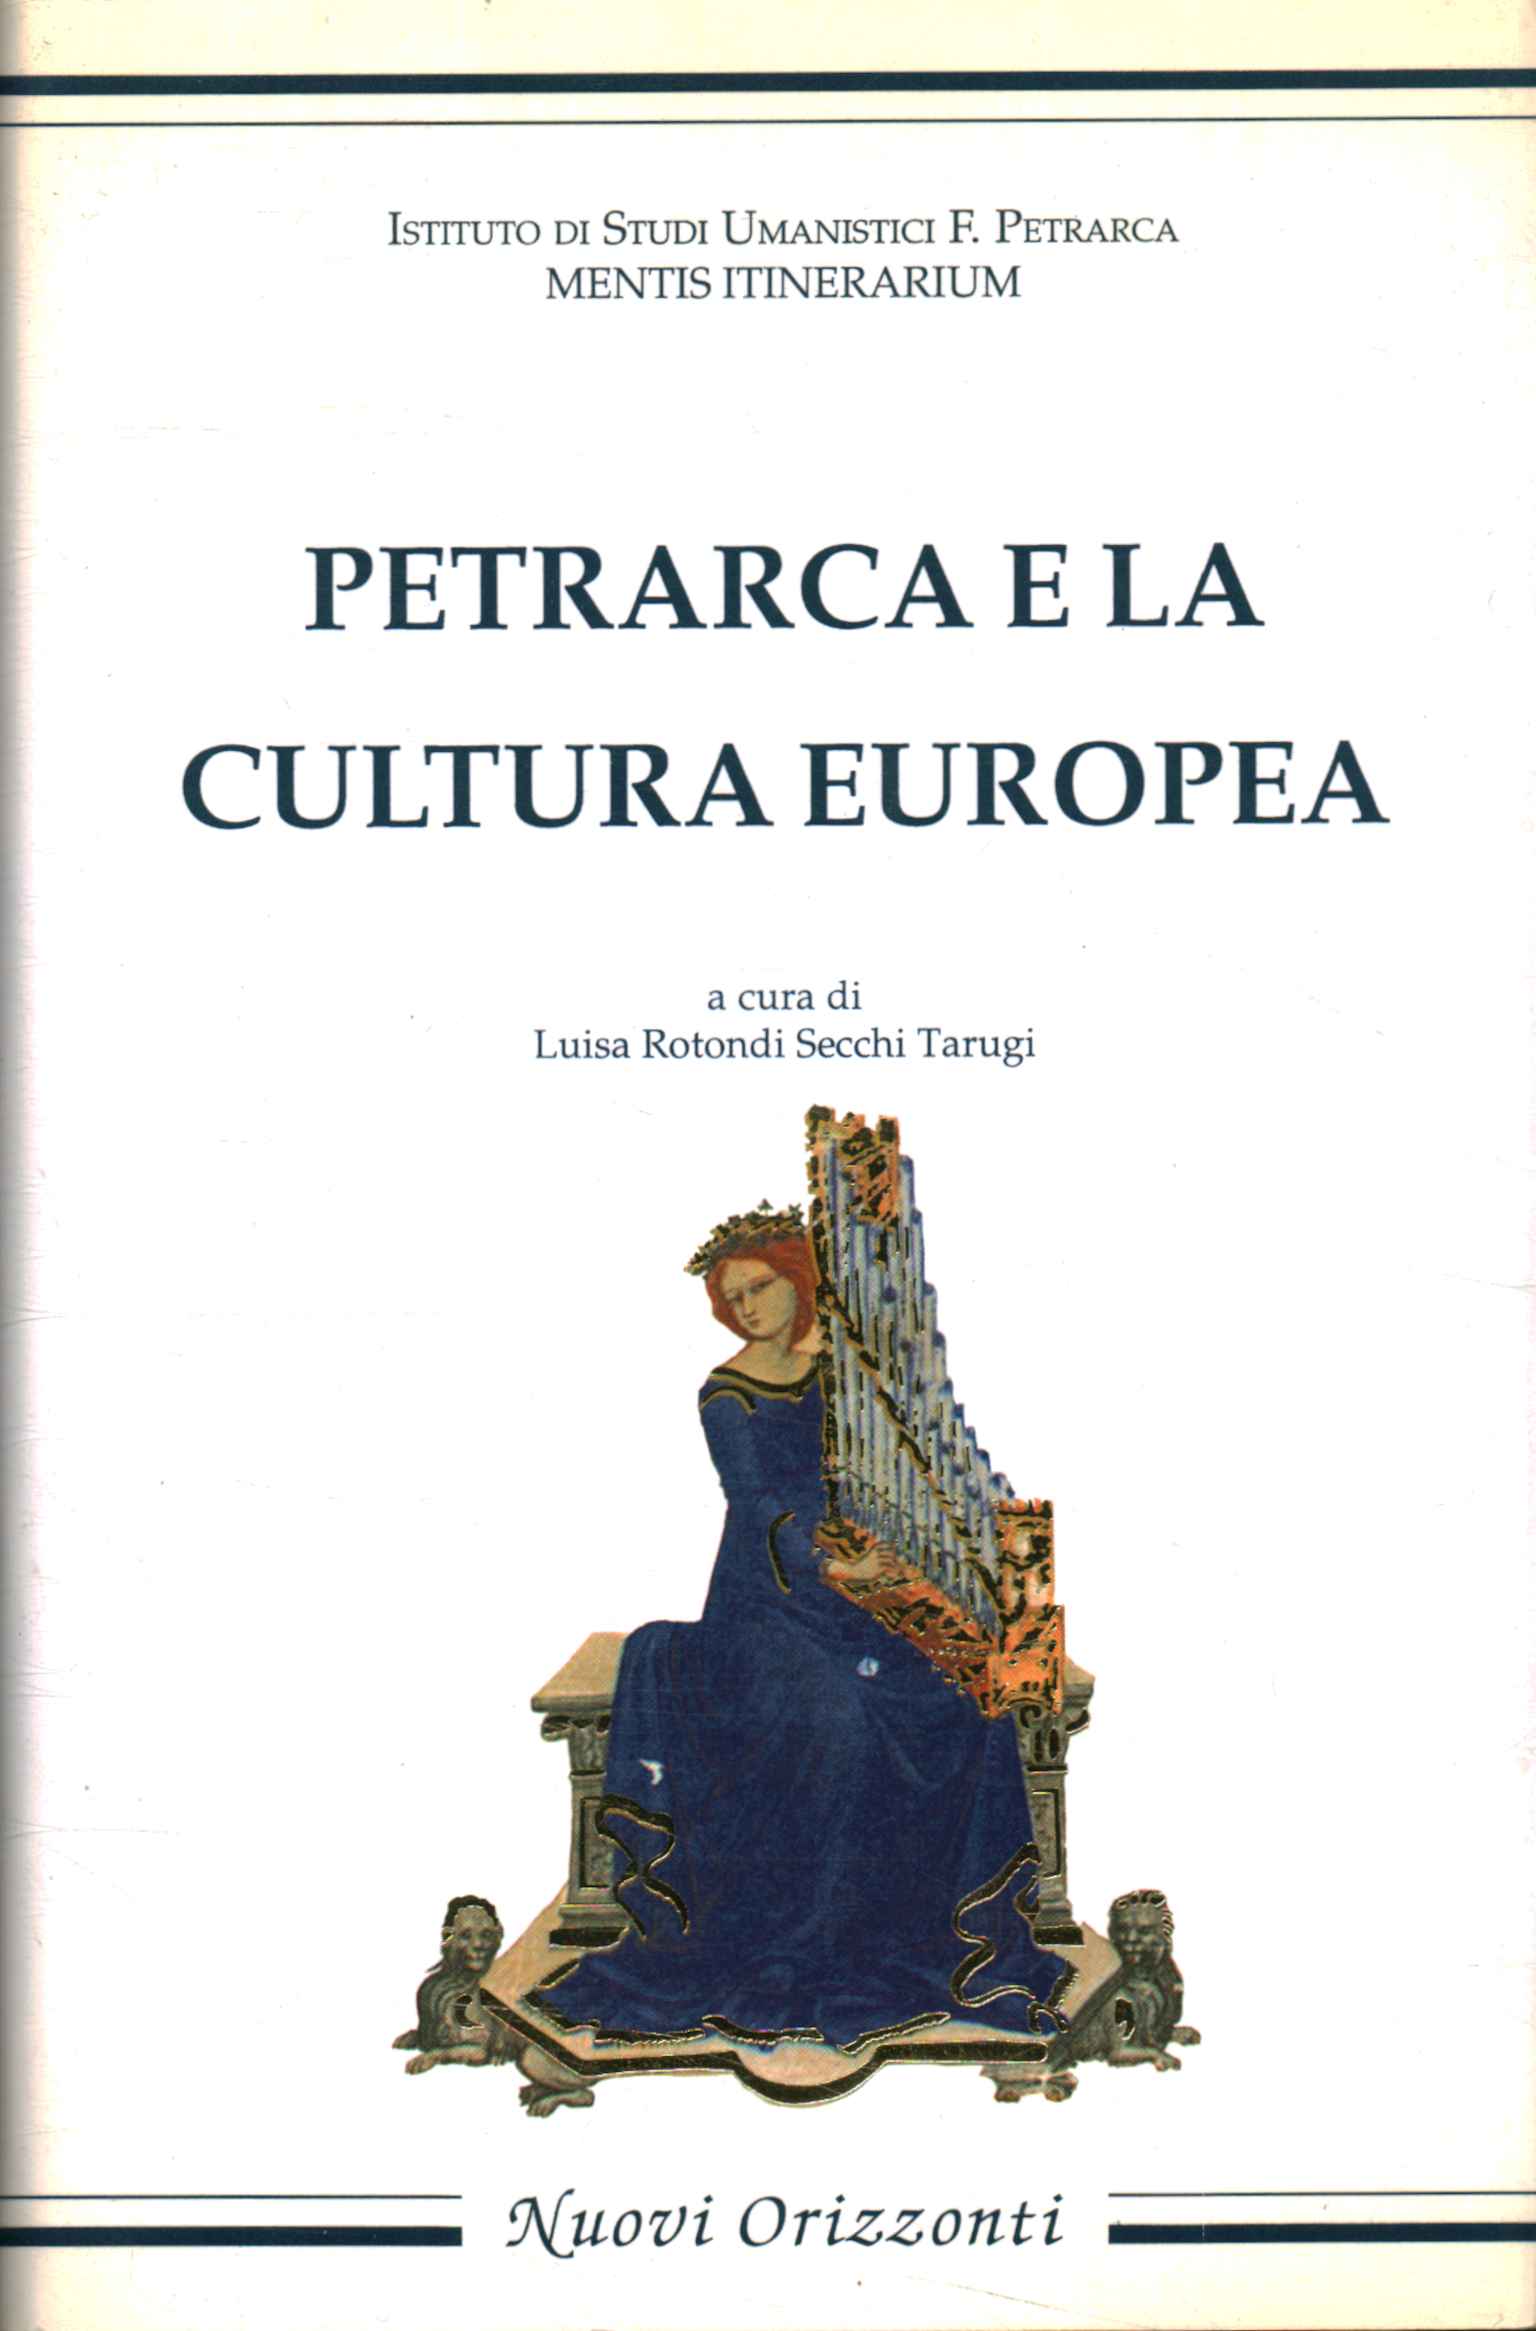 Petrarca und die europäische Kultur